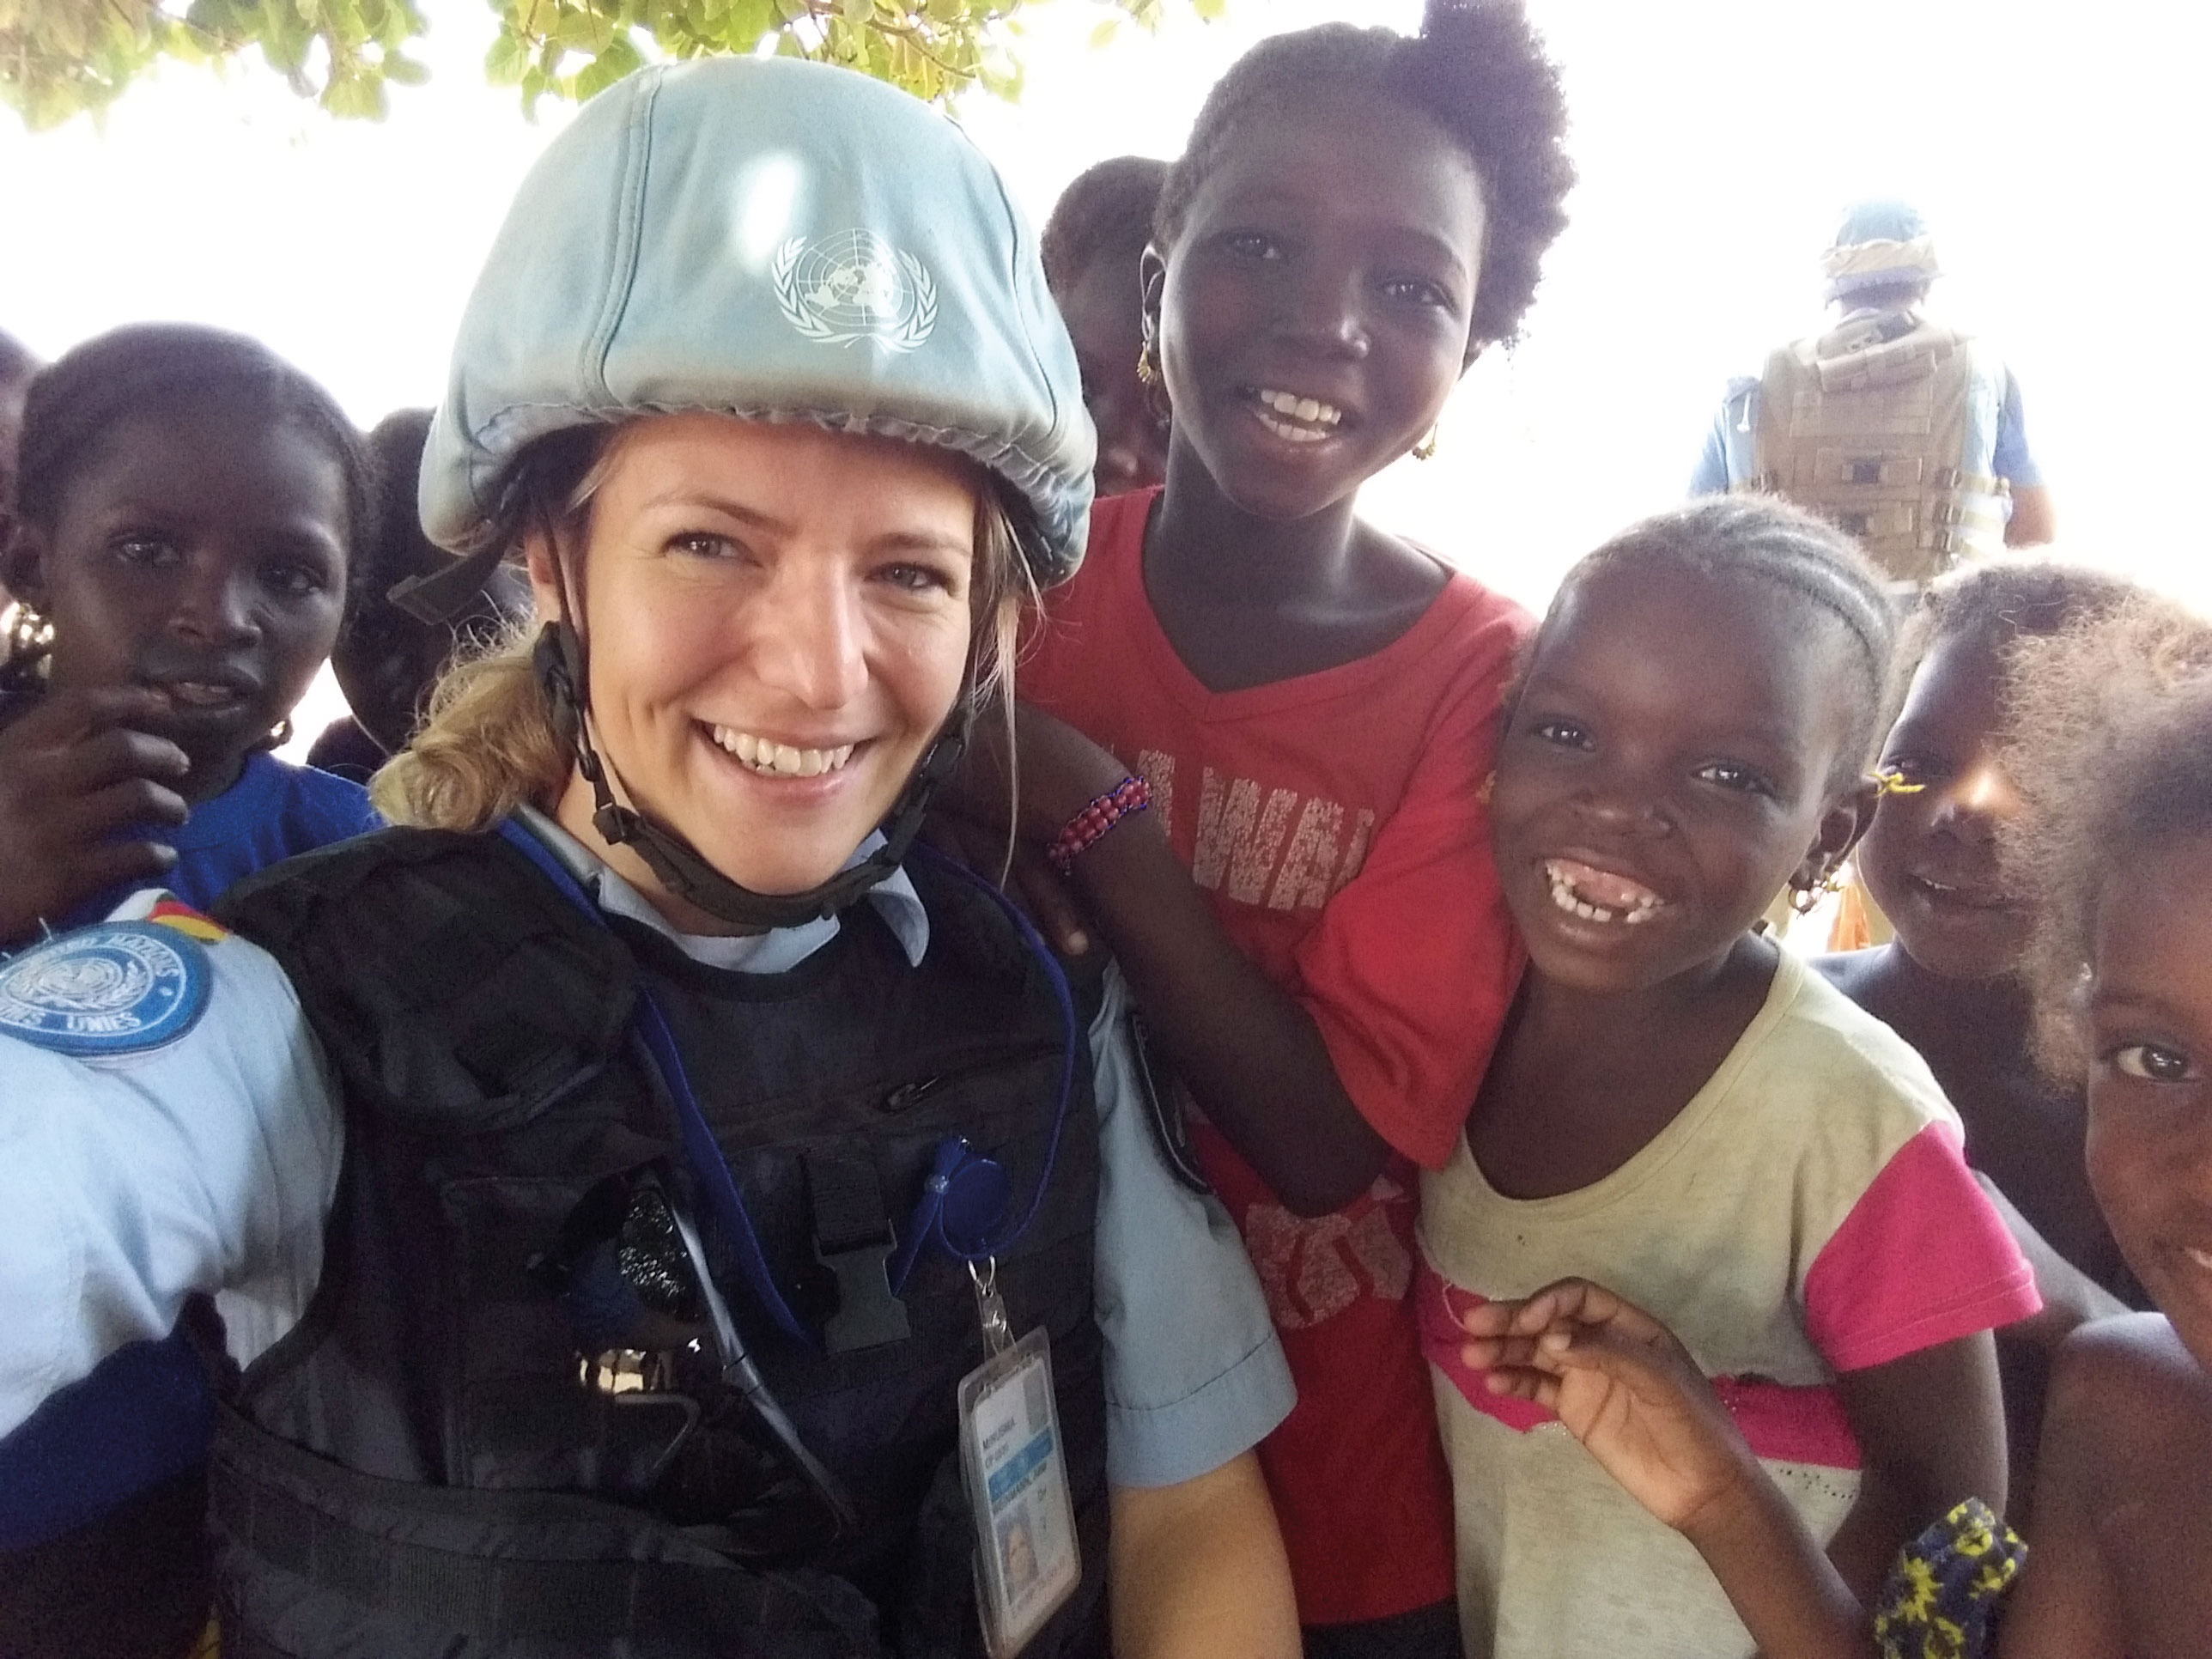 Als Blauhelmpolizistin in Afrika im Einsatz: freundliche Begegnung mit Kindern in Douentza auf Streifengang